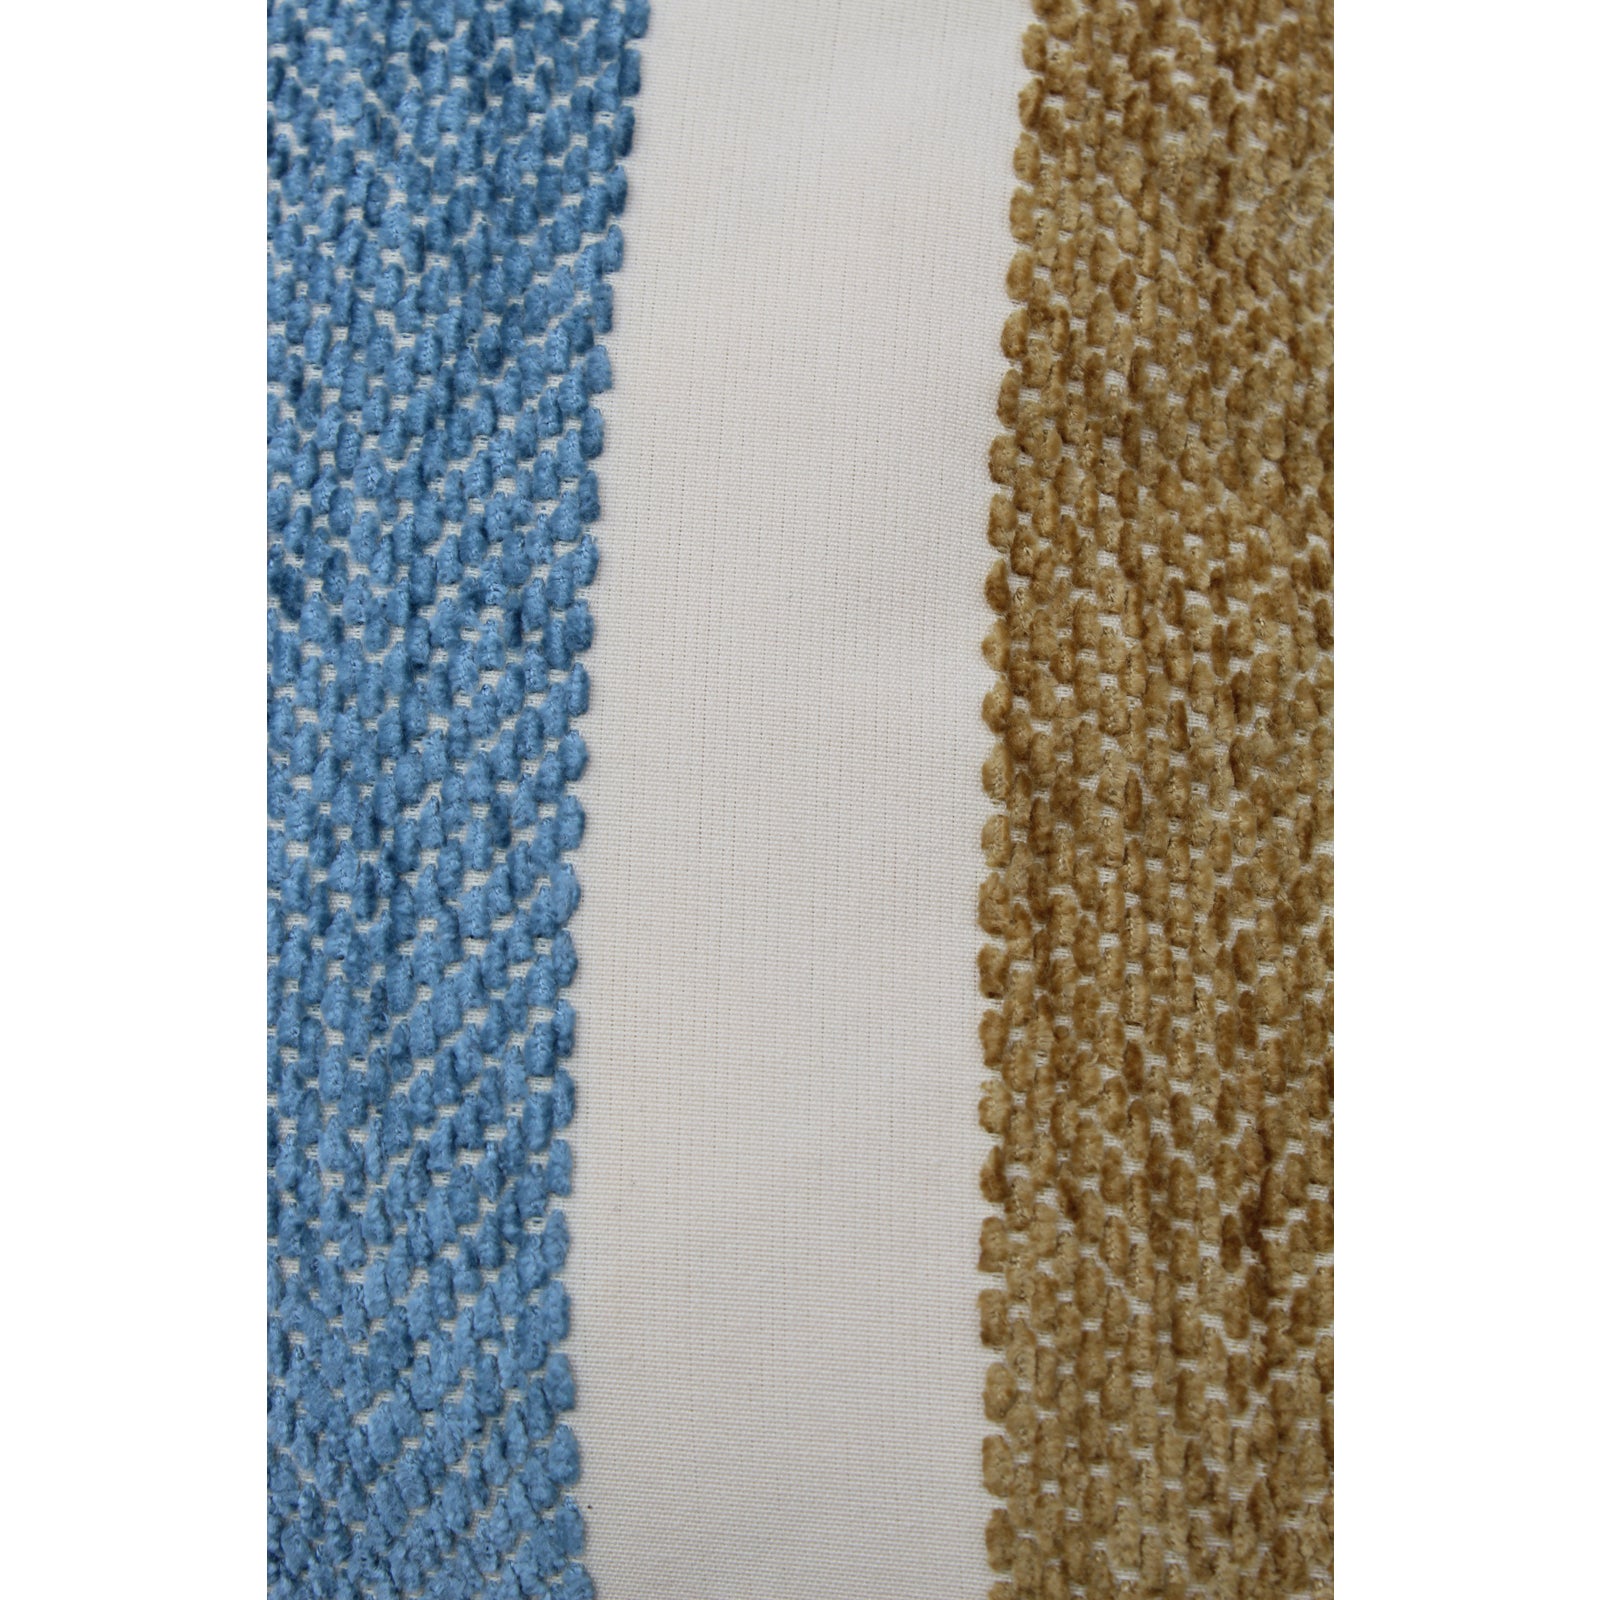 contemporary-striped-silk-down-pillows-a-pair-0038